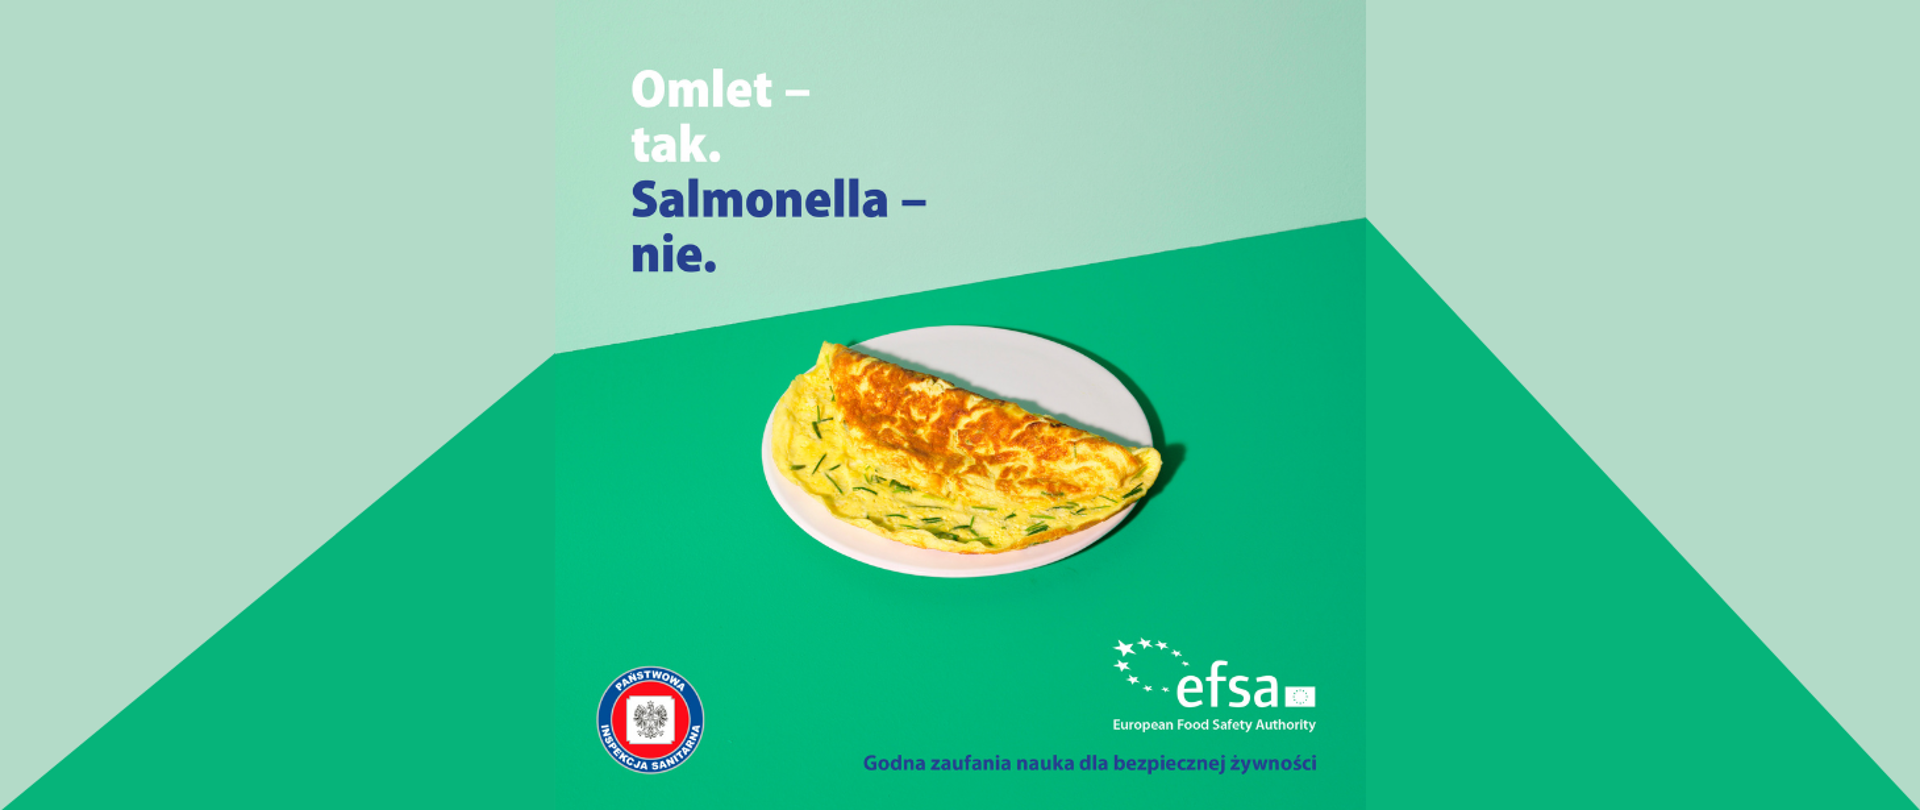 Grafika przedstawia omlet na talerzu z napisem Omlet- tak. Salmonella- nie. Na dole grafiki logo Państwowej Inspekcji Sanitarnej oraz EFS – European Food Safety Authority -Godna zaufania nauka dla bezpiecznej żywności.